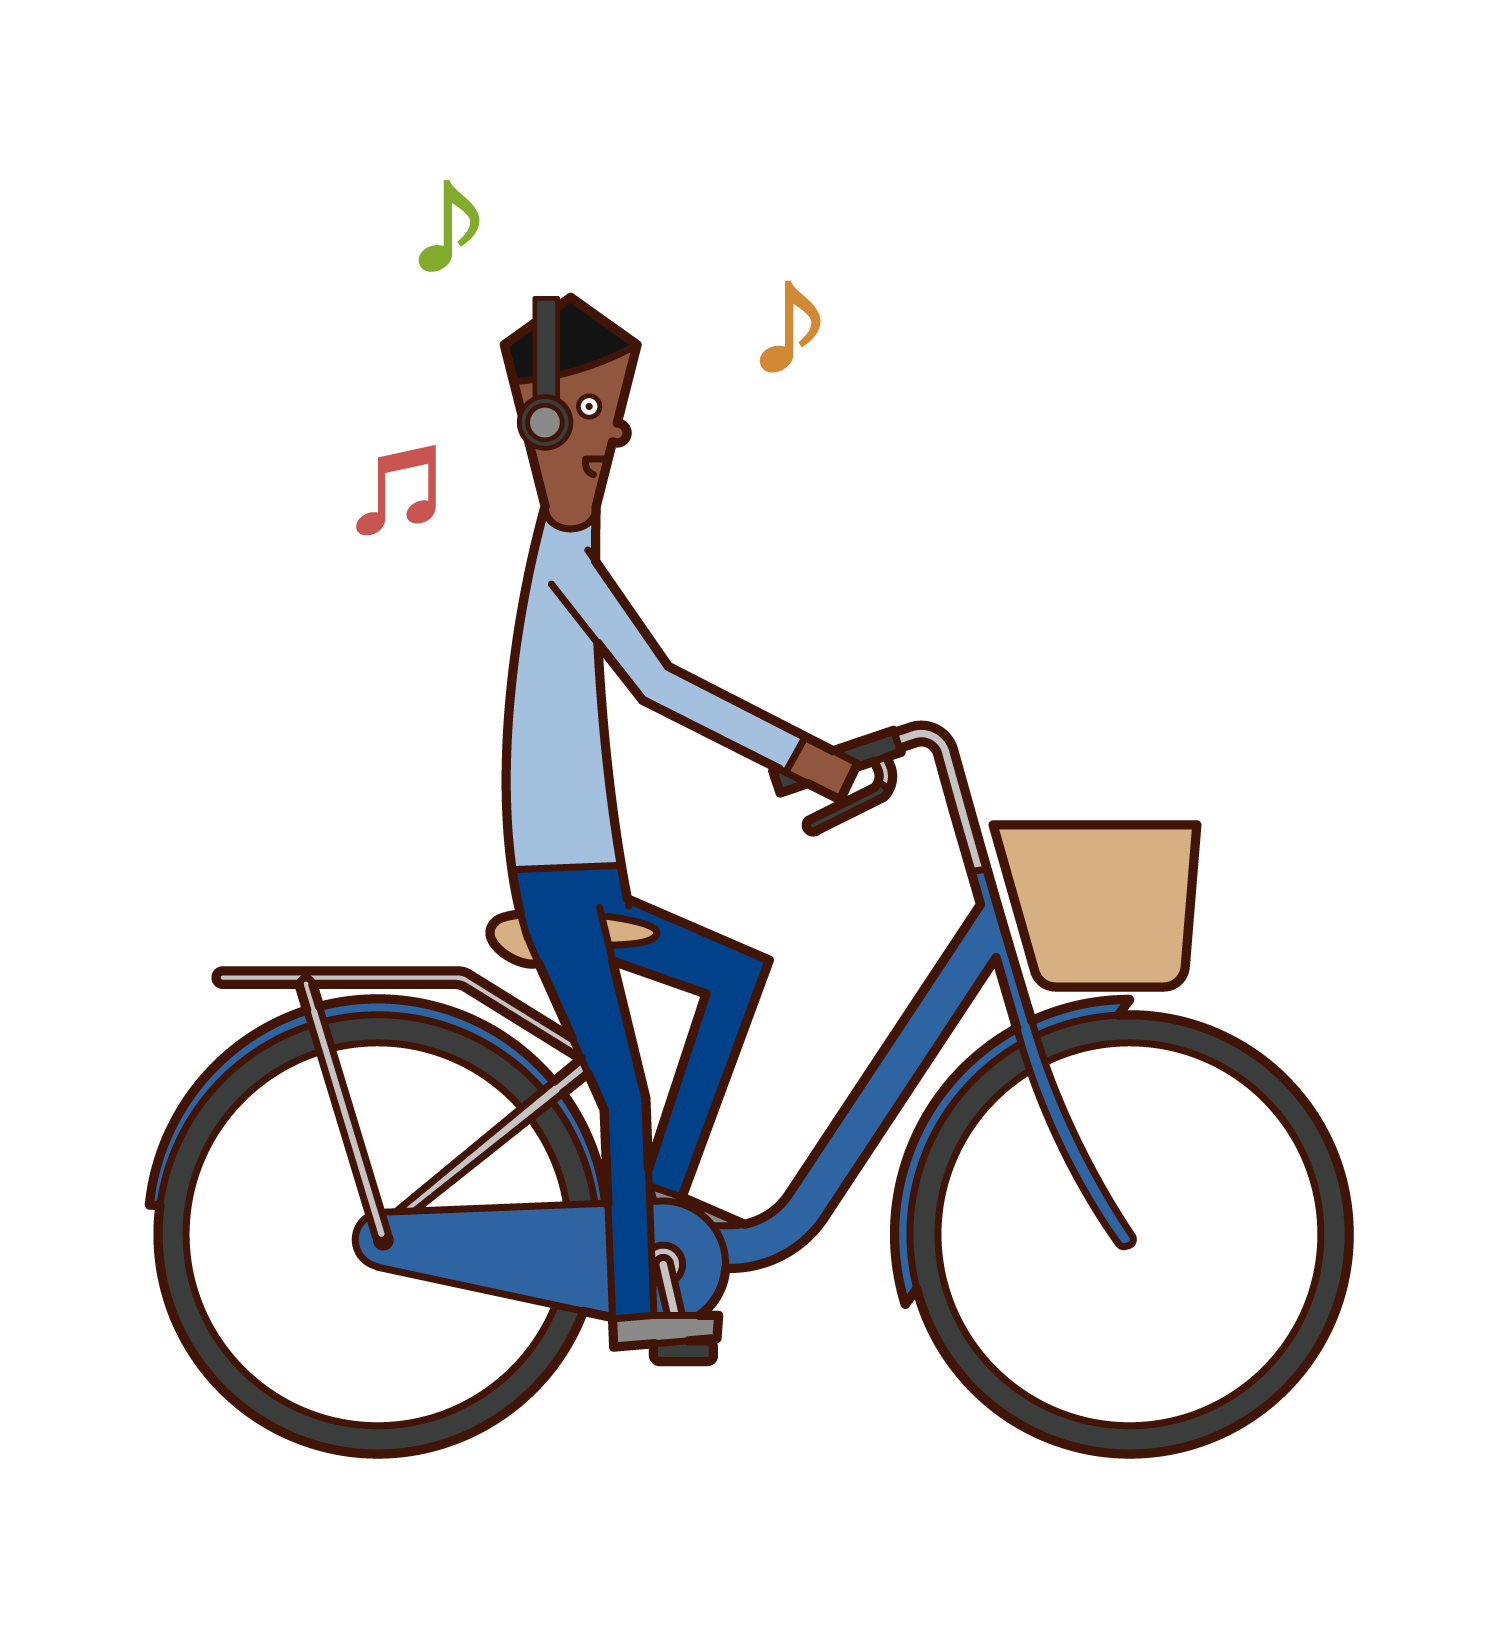 不聽音樂但騎自行車的人(男性)的插圖